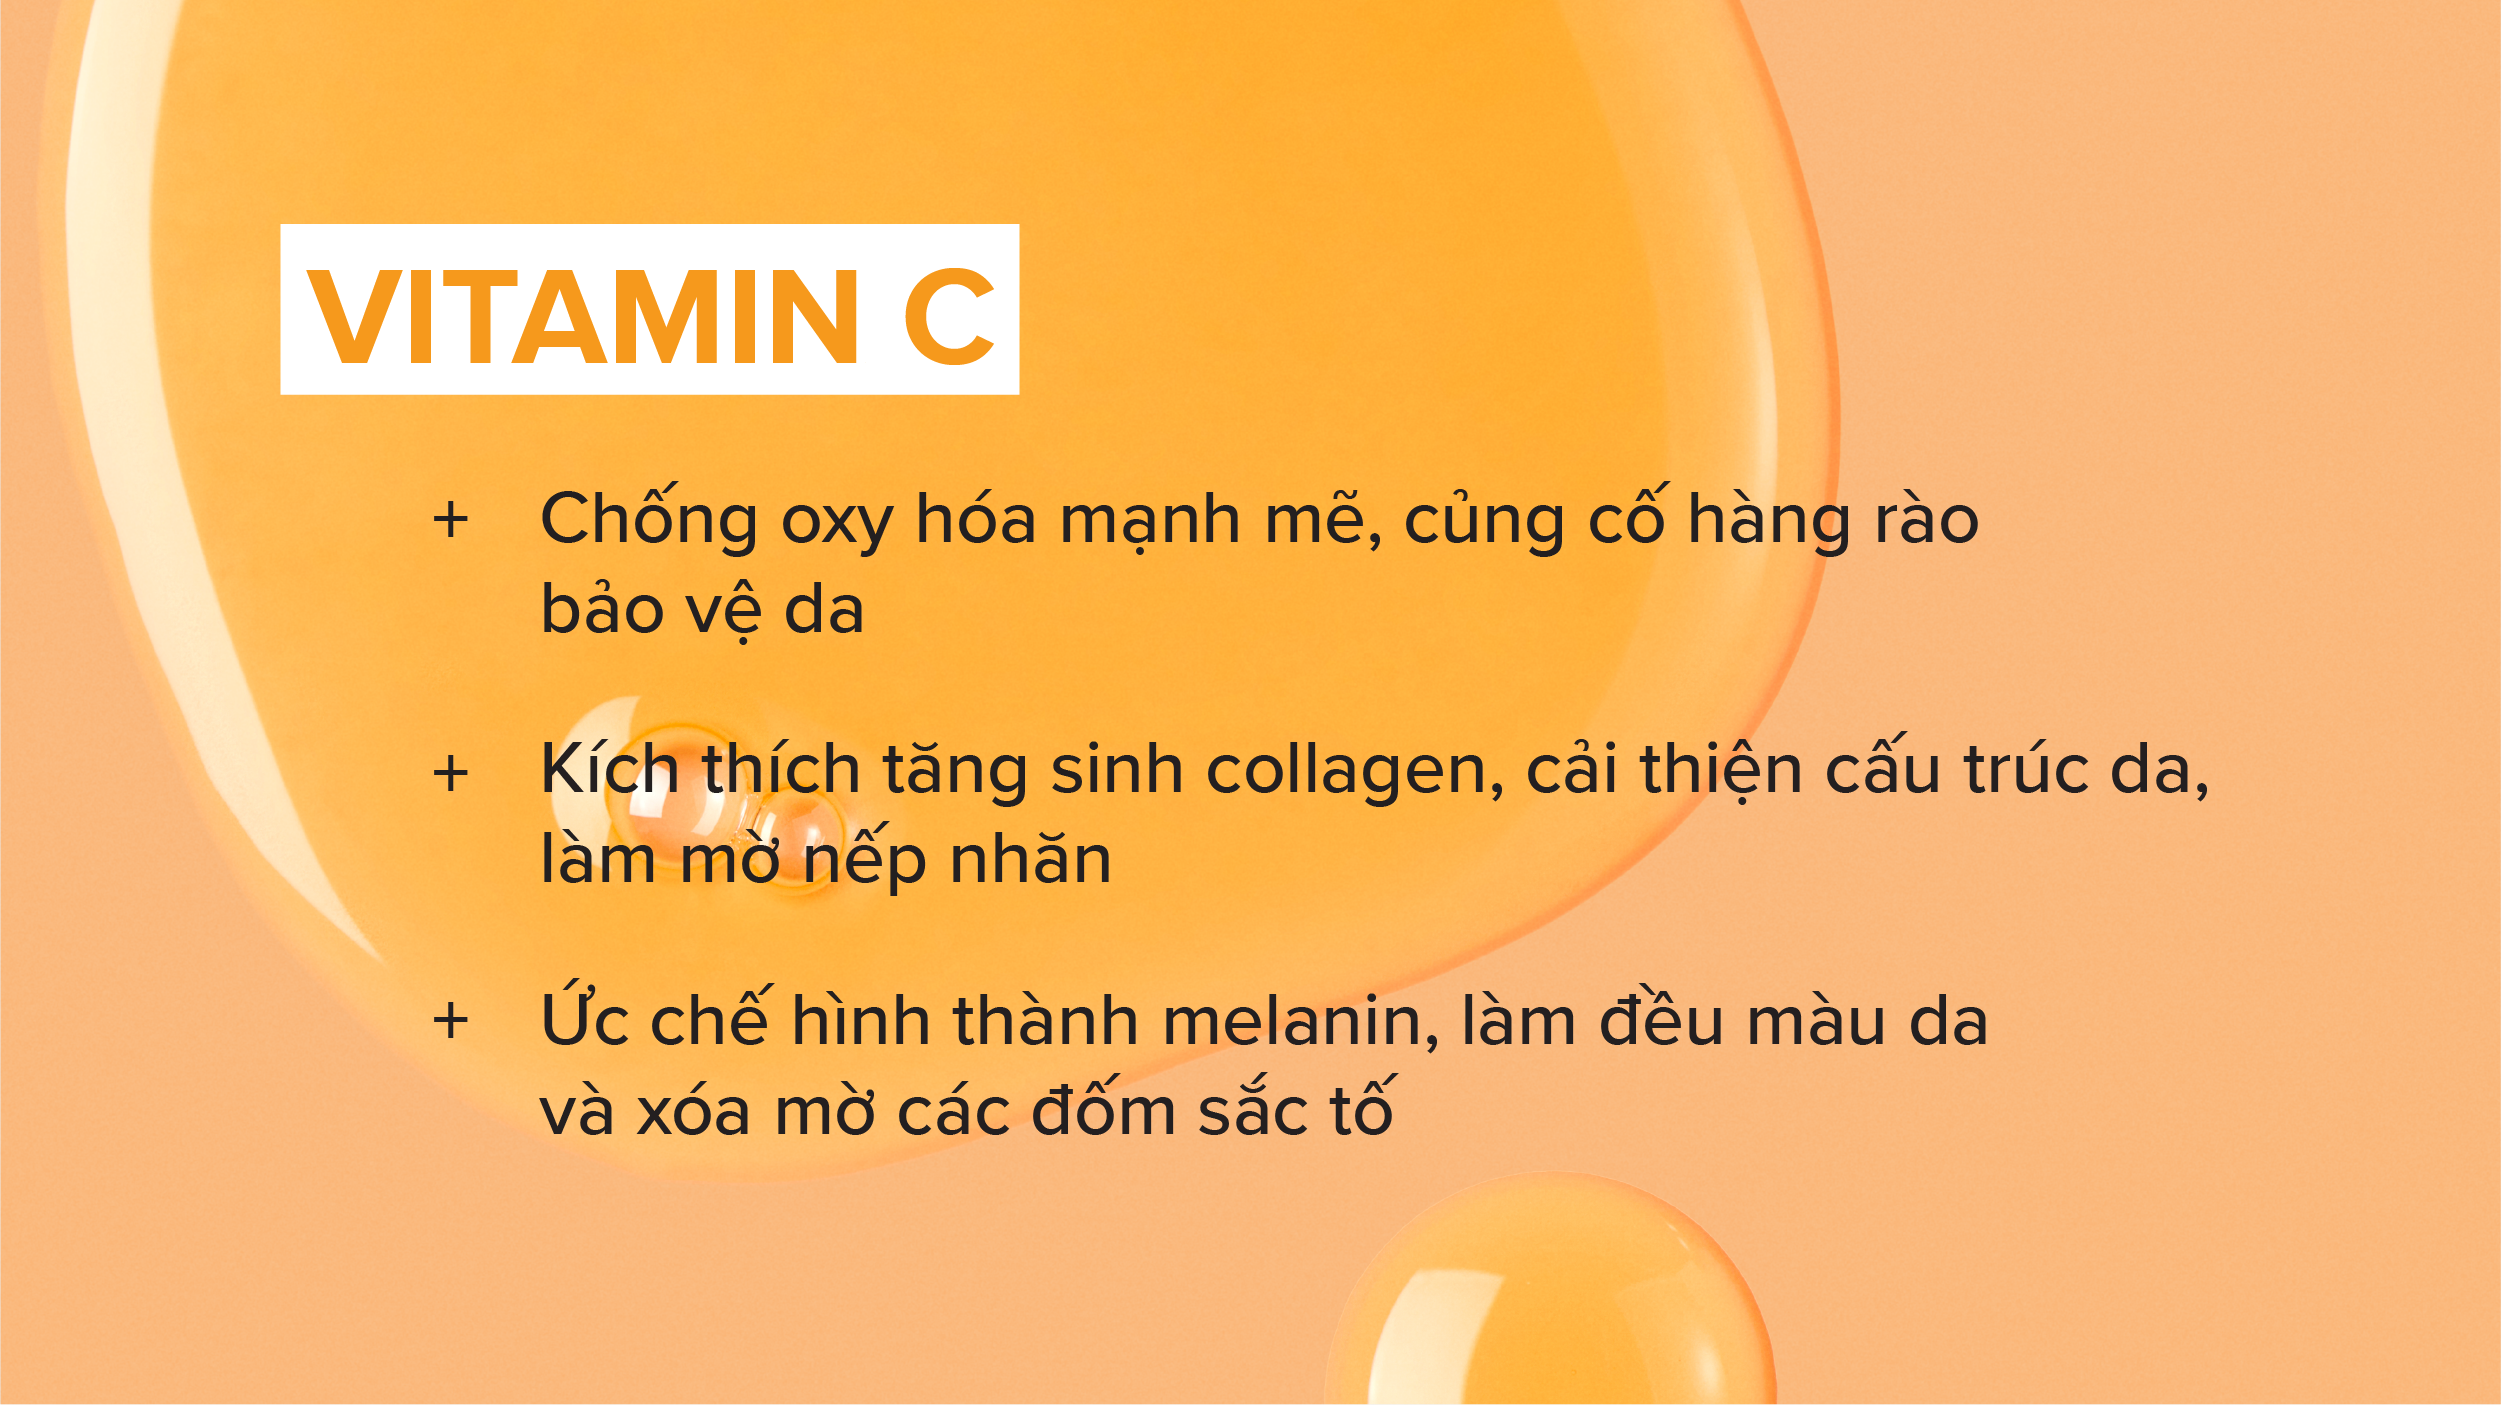  có nên dùng vitamin c sau khi nặn mụn , lợi ích của vitamin c cho da mụn